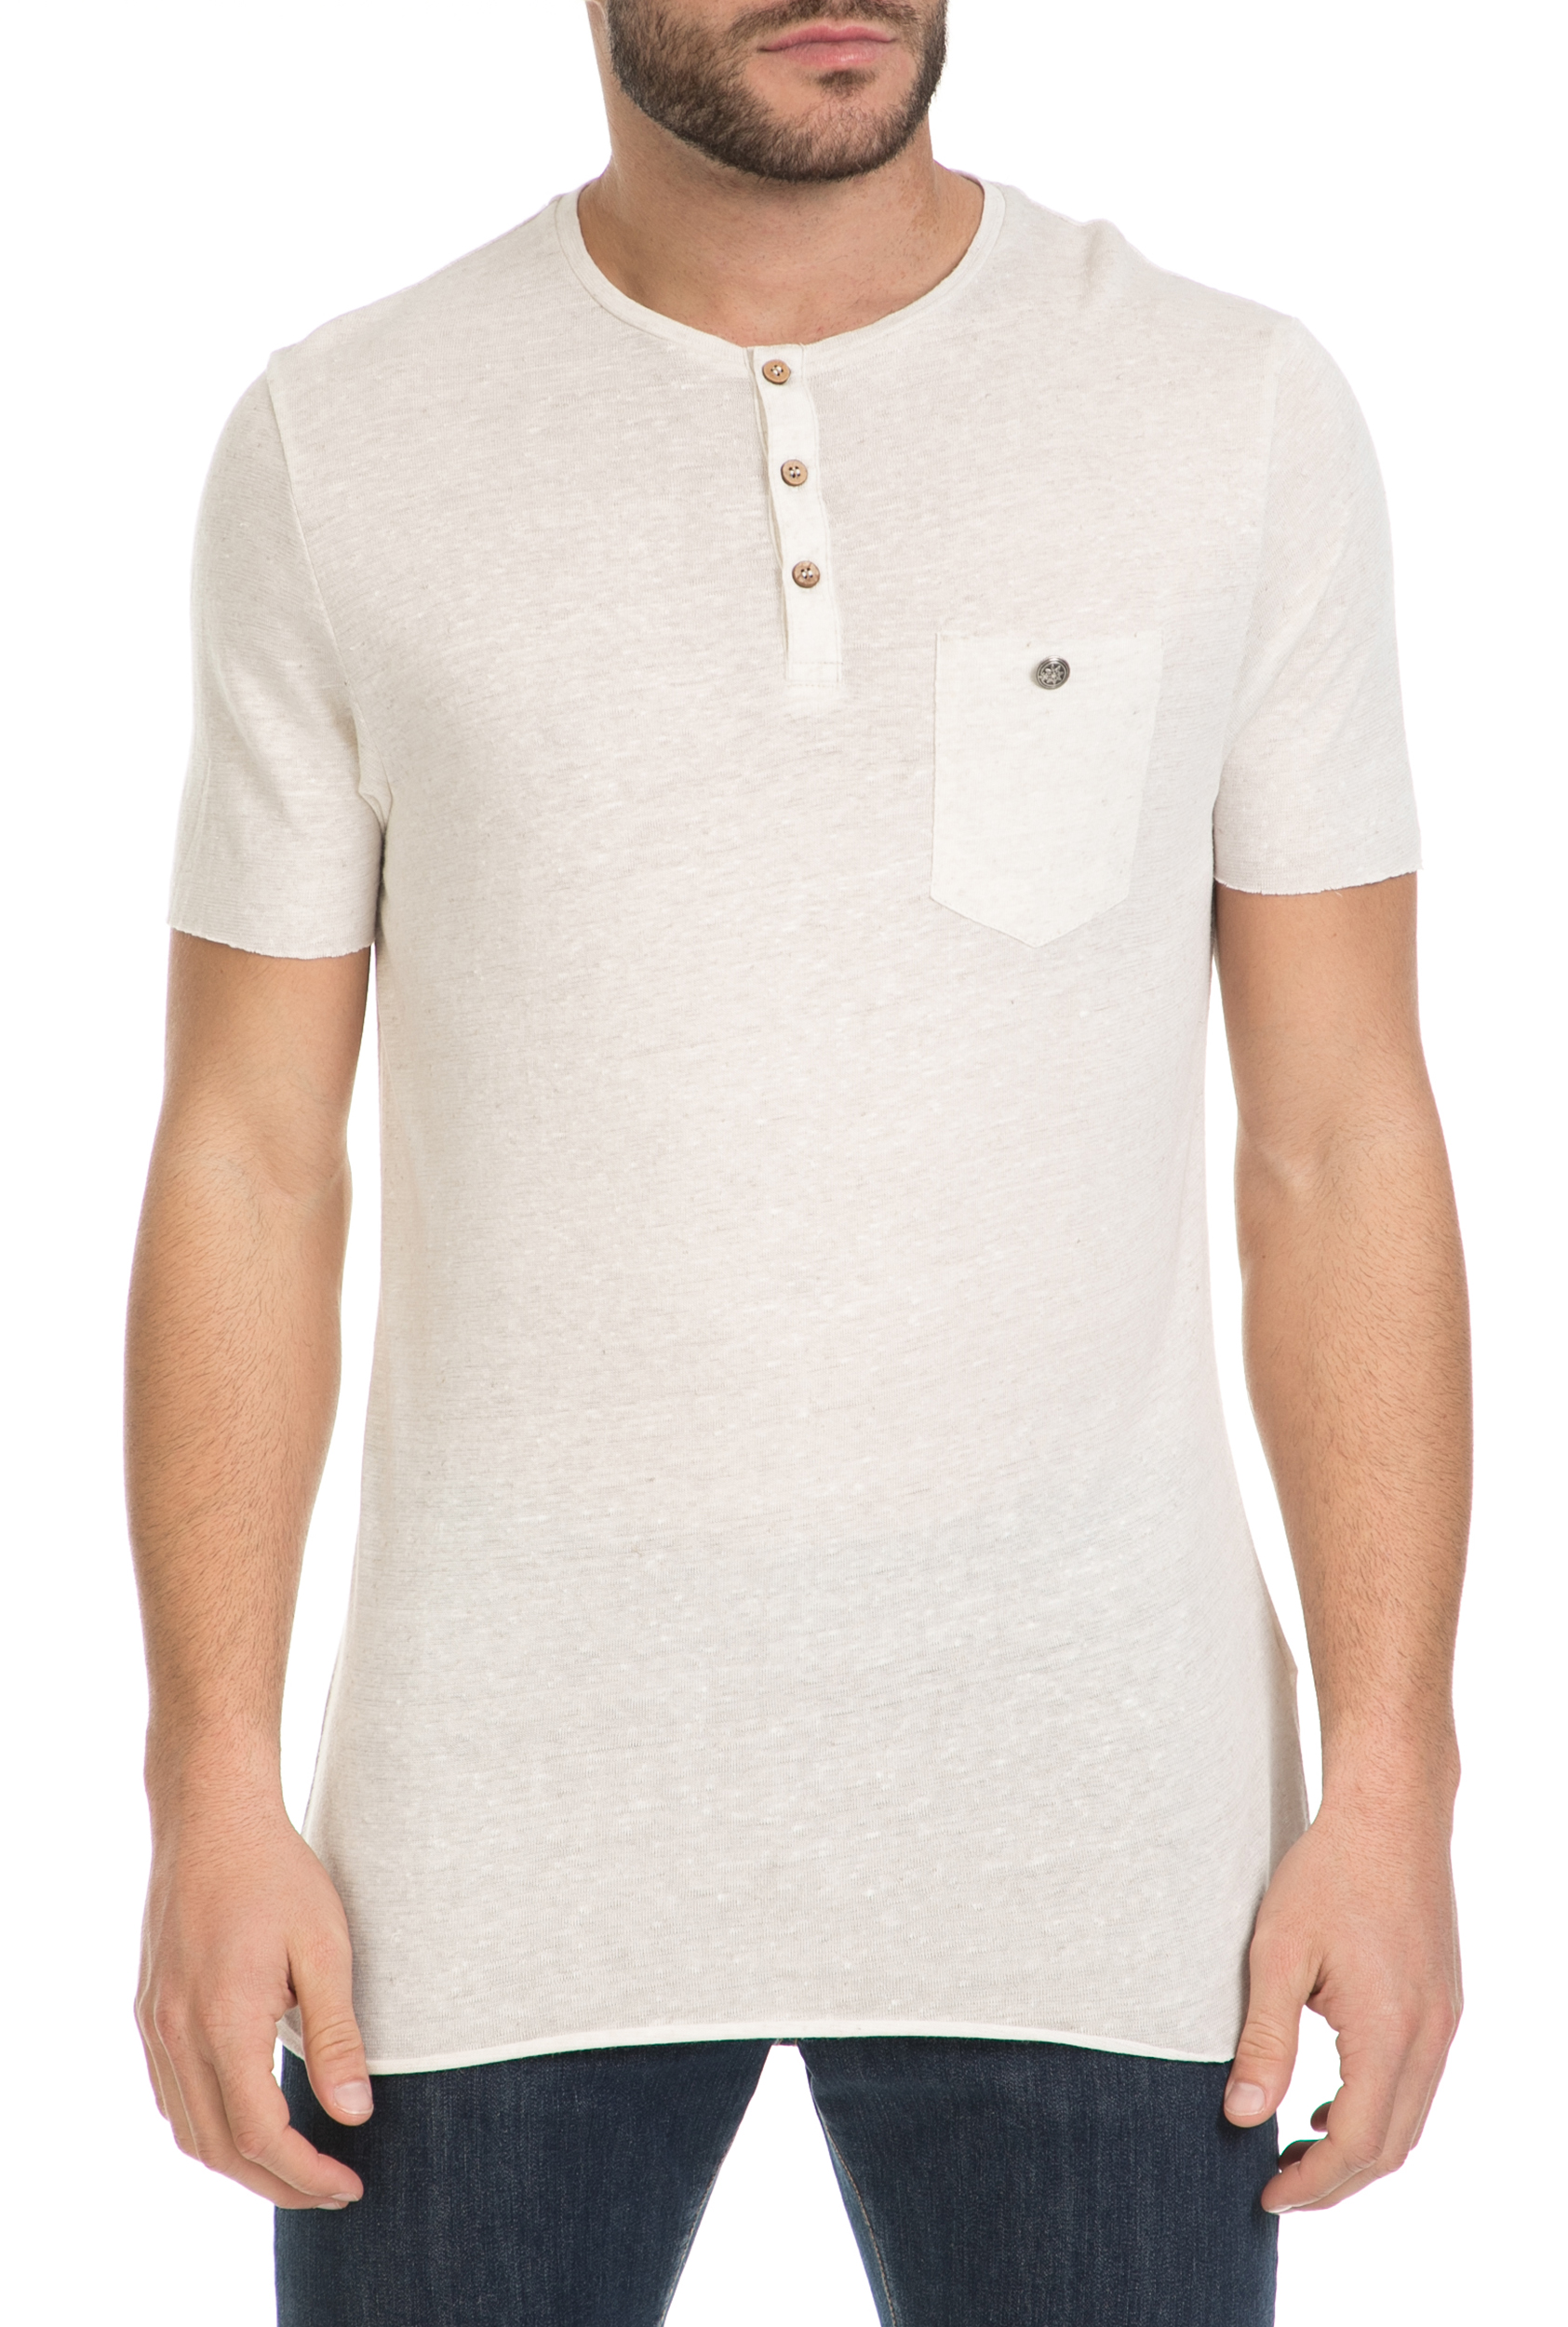 Ανδρικά/Ρούχα/Μπλούζες/Κοντομάνικες SSEINSE - Ανδρική μπλούζα SSEINSE λευκή